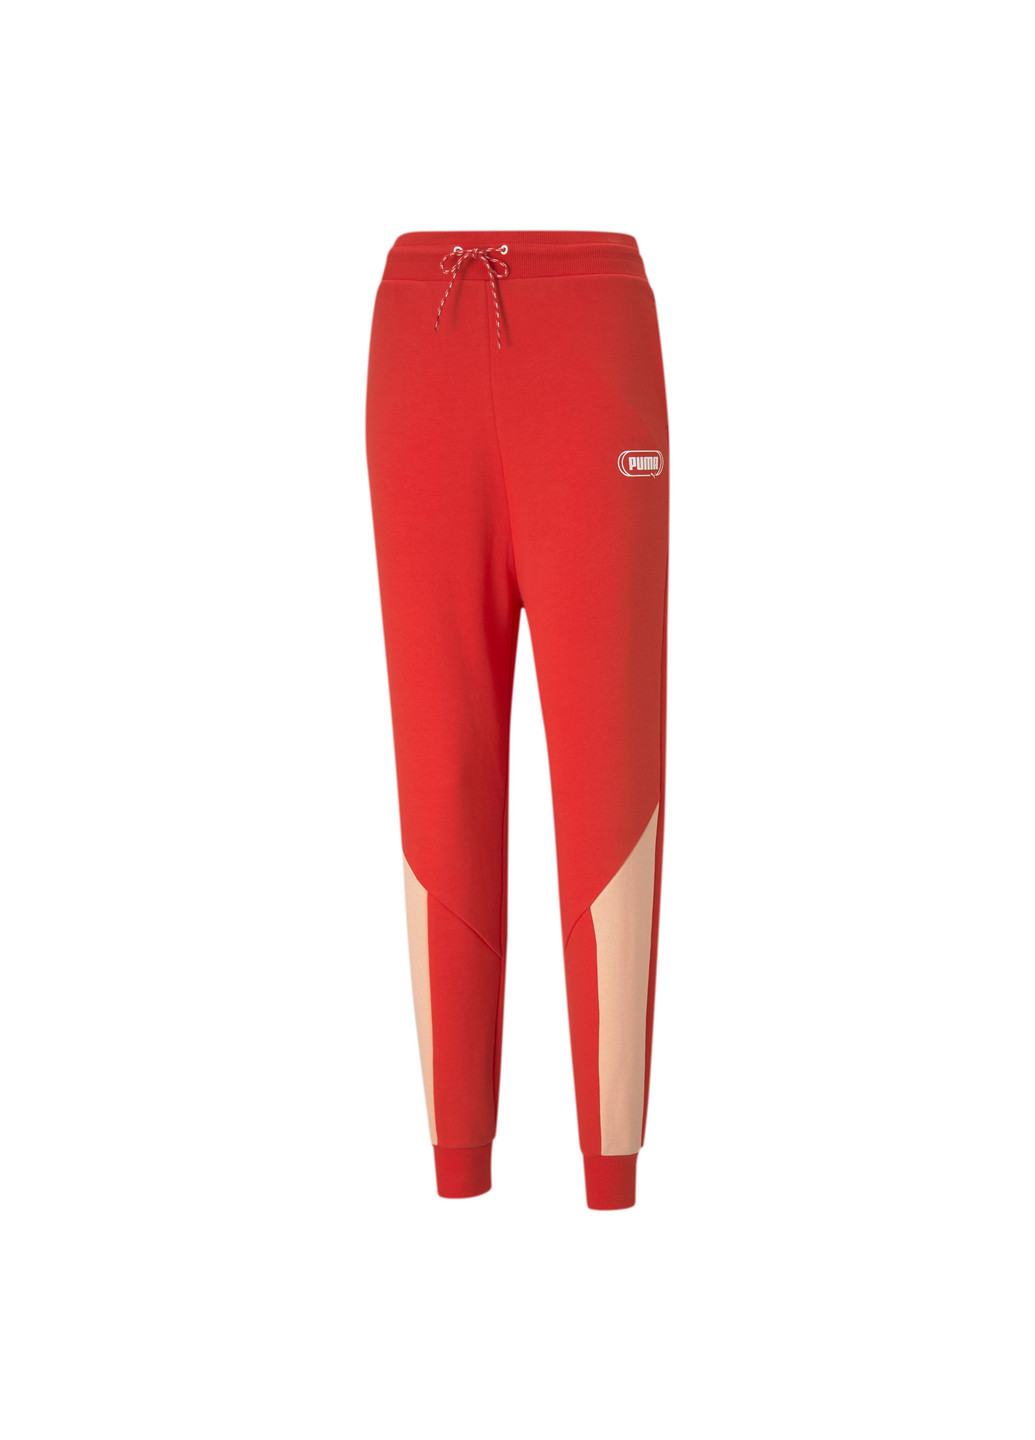 Красные демисезонные штаны rebel high waist women's pants Puma